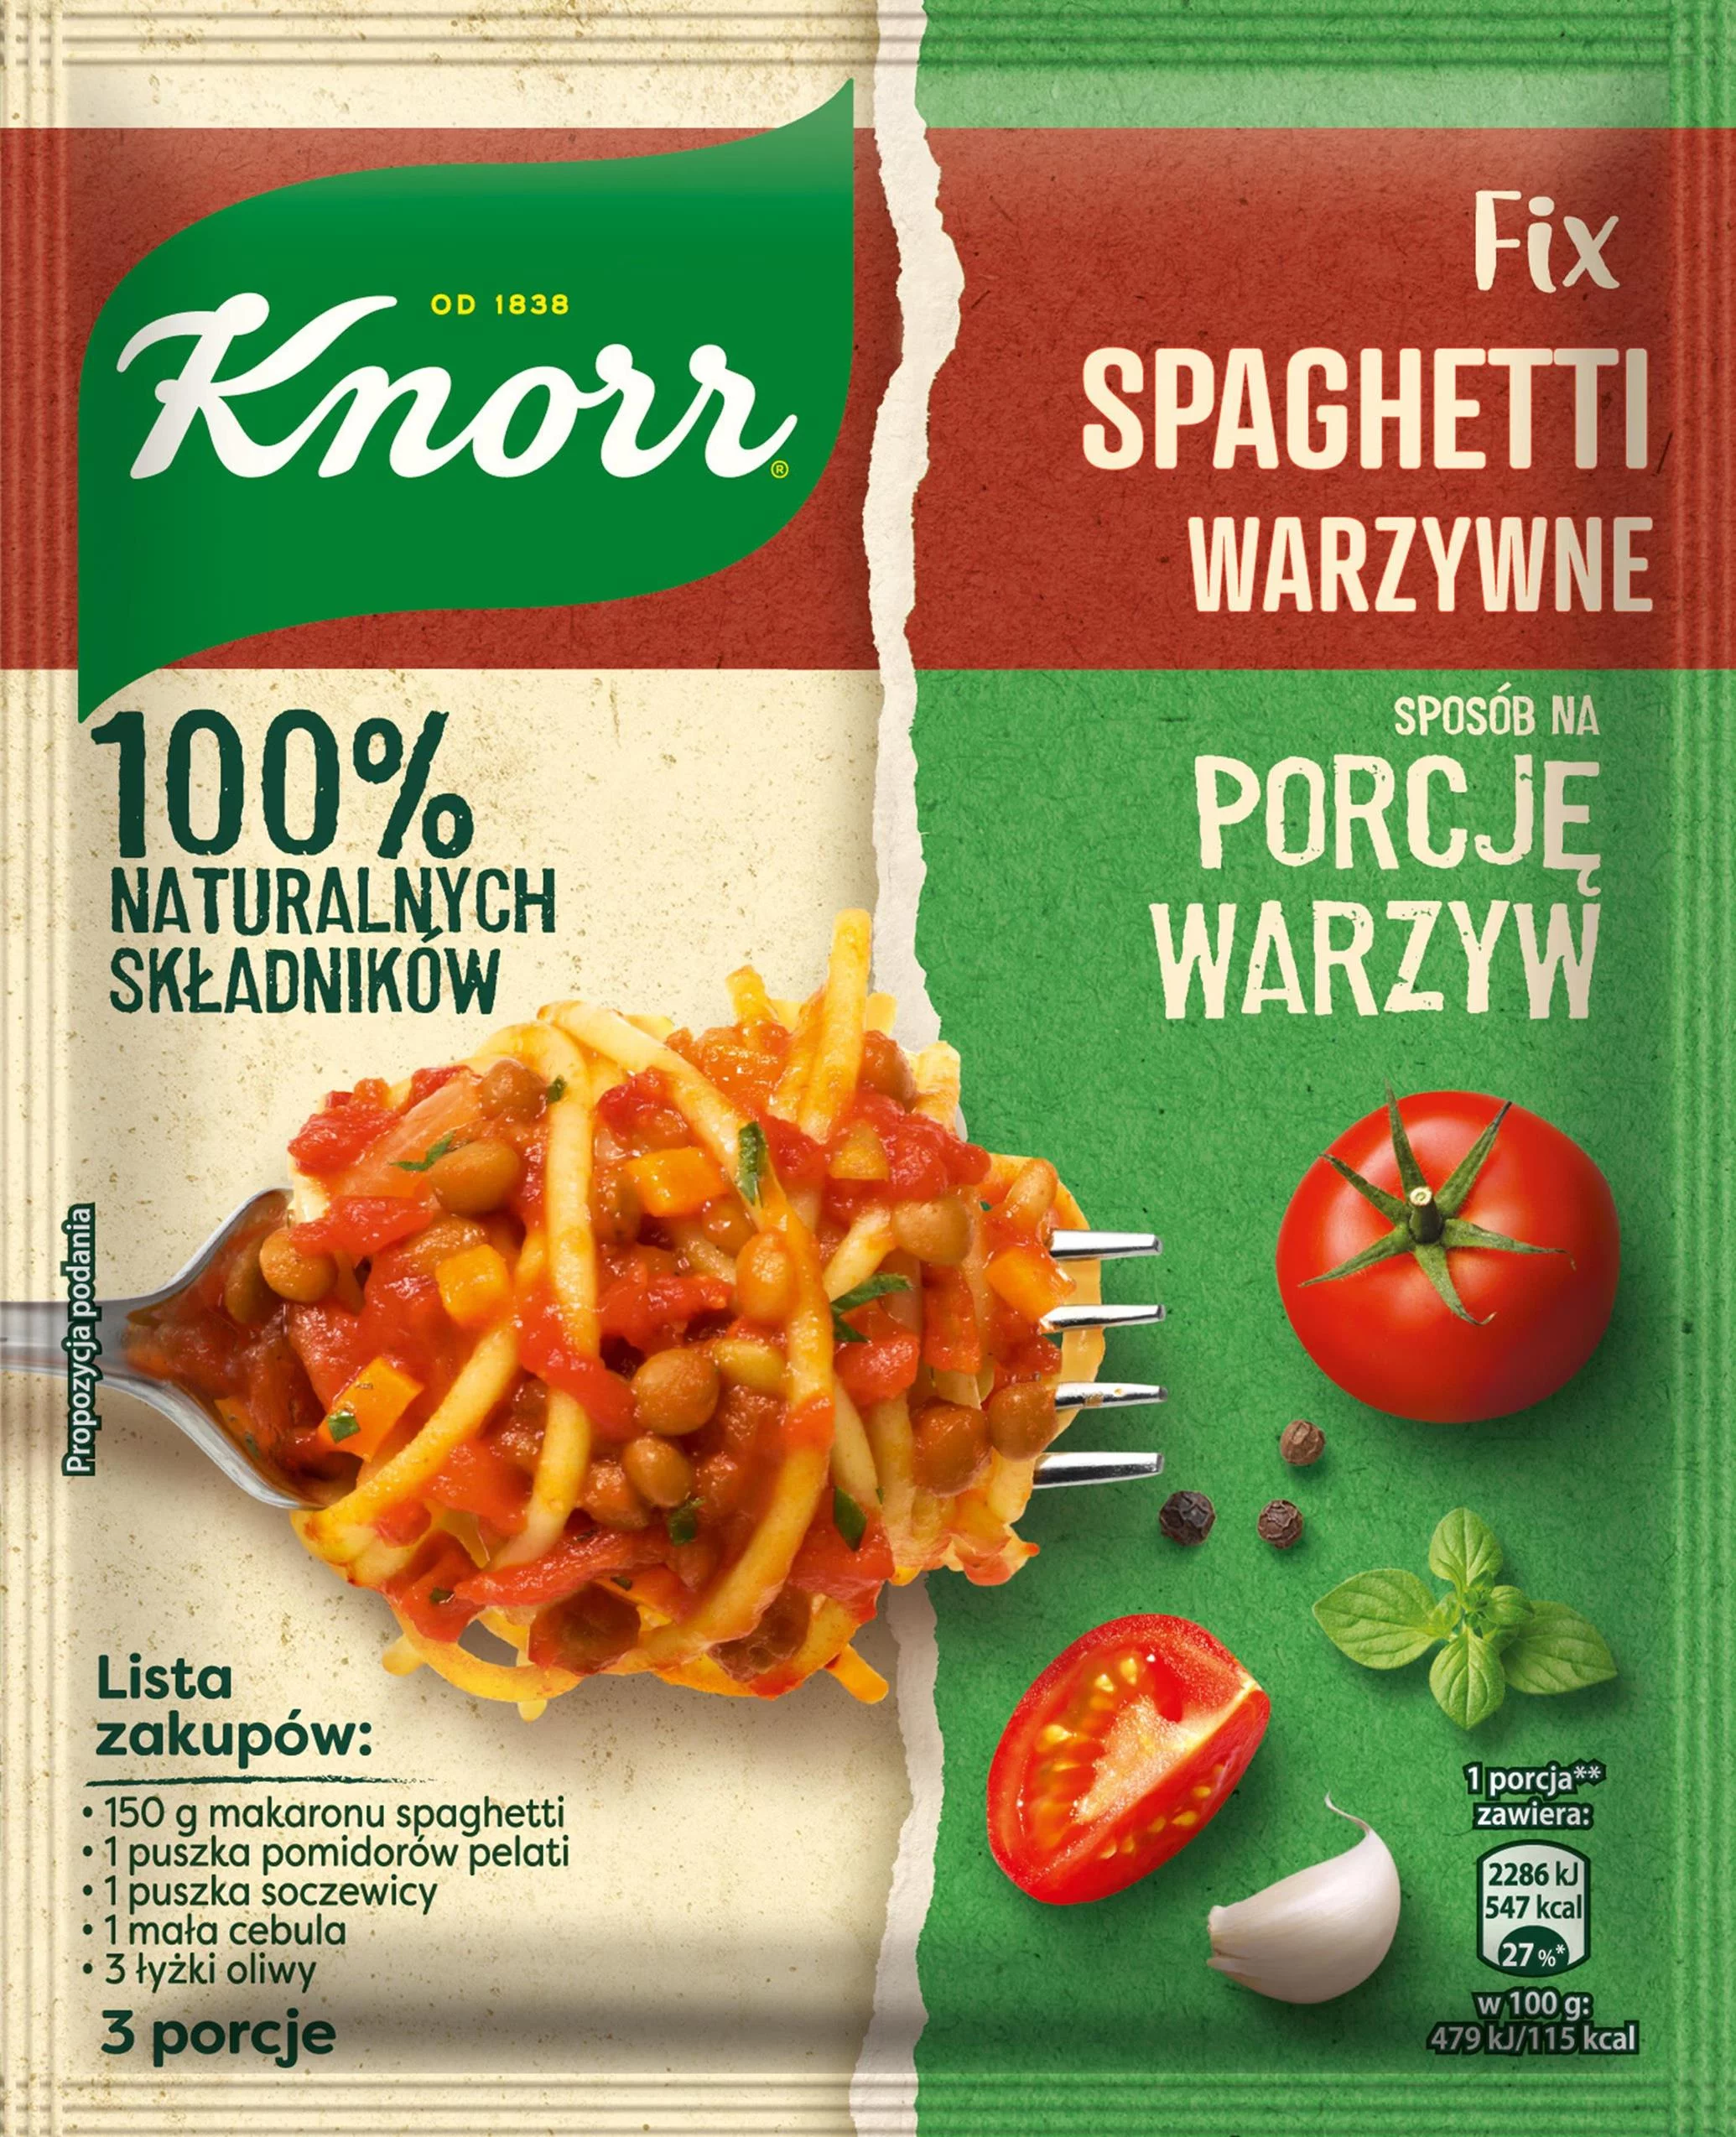 NOWOŚĆ! Fixy Sposób na porcję warzyw Knorr  Curry, gulasz i spaghetti z warzywnym twistem!